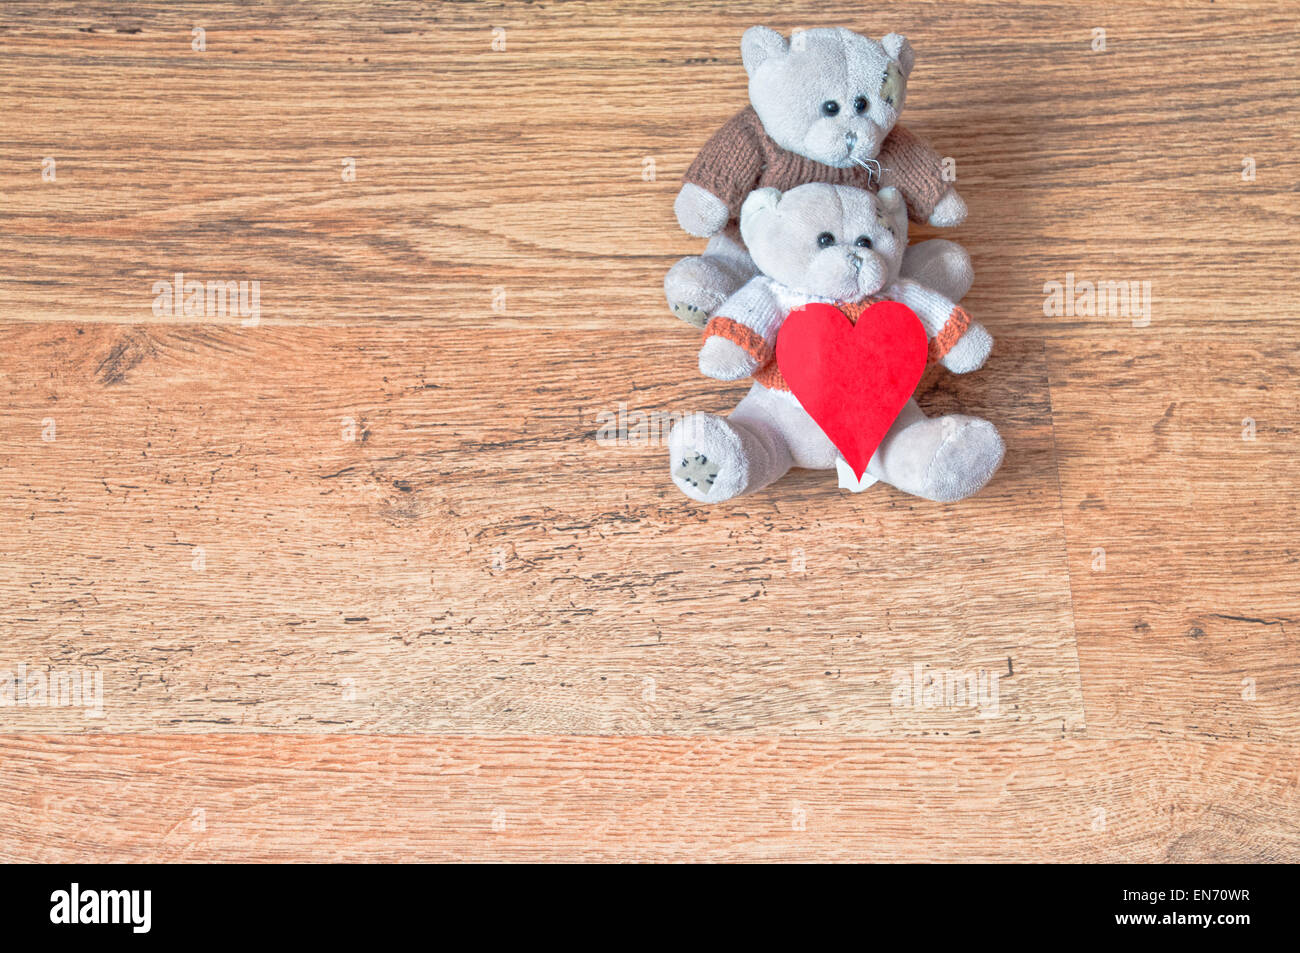 Teddy Liebe Tag Valentines Bär Bären Valentin niedlich Hintergrund romantische braun zwei Konzept Vintage Freundschaft paar aus Holz rot Stockfoto